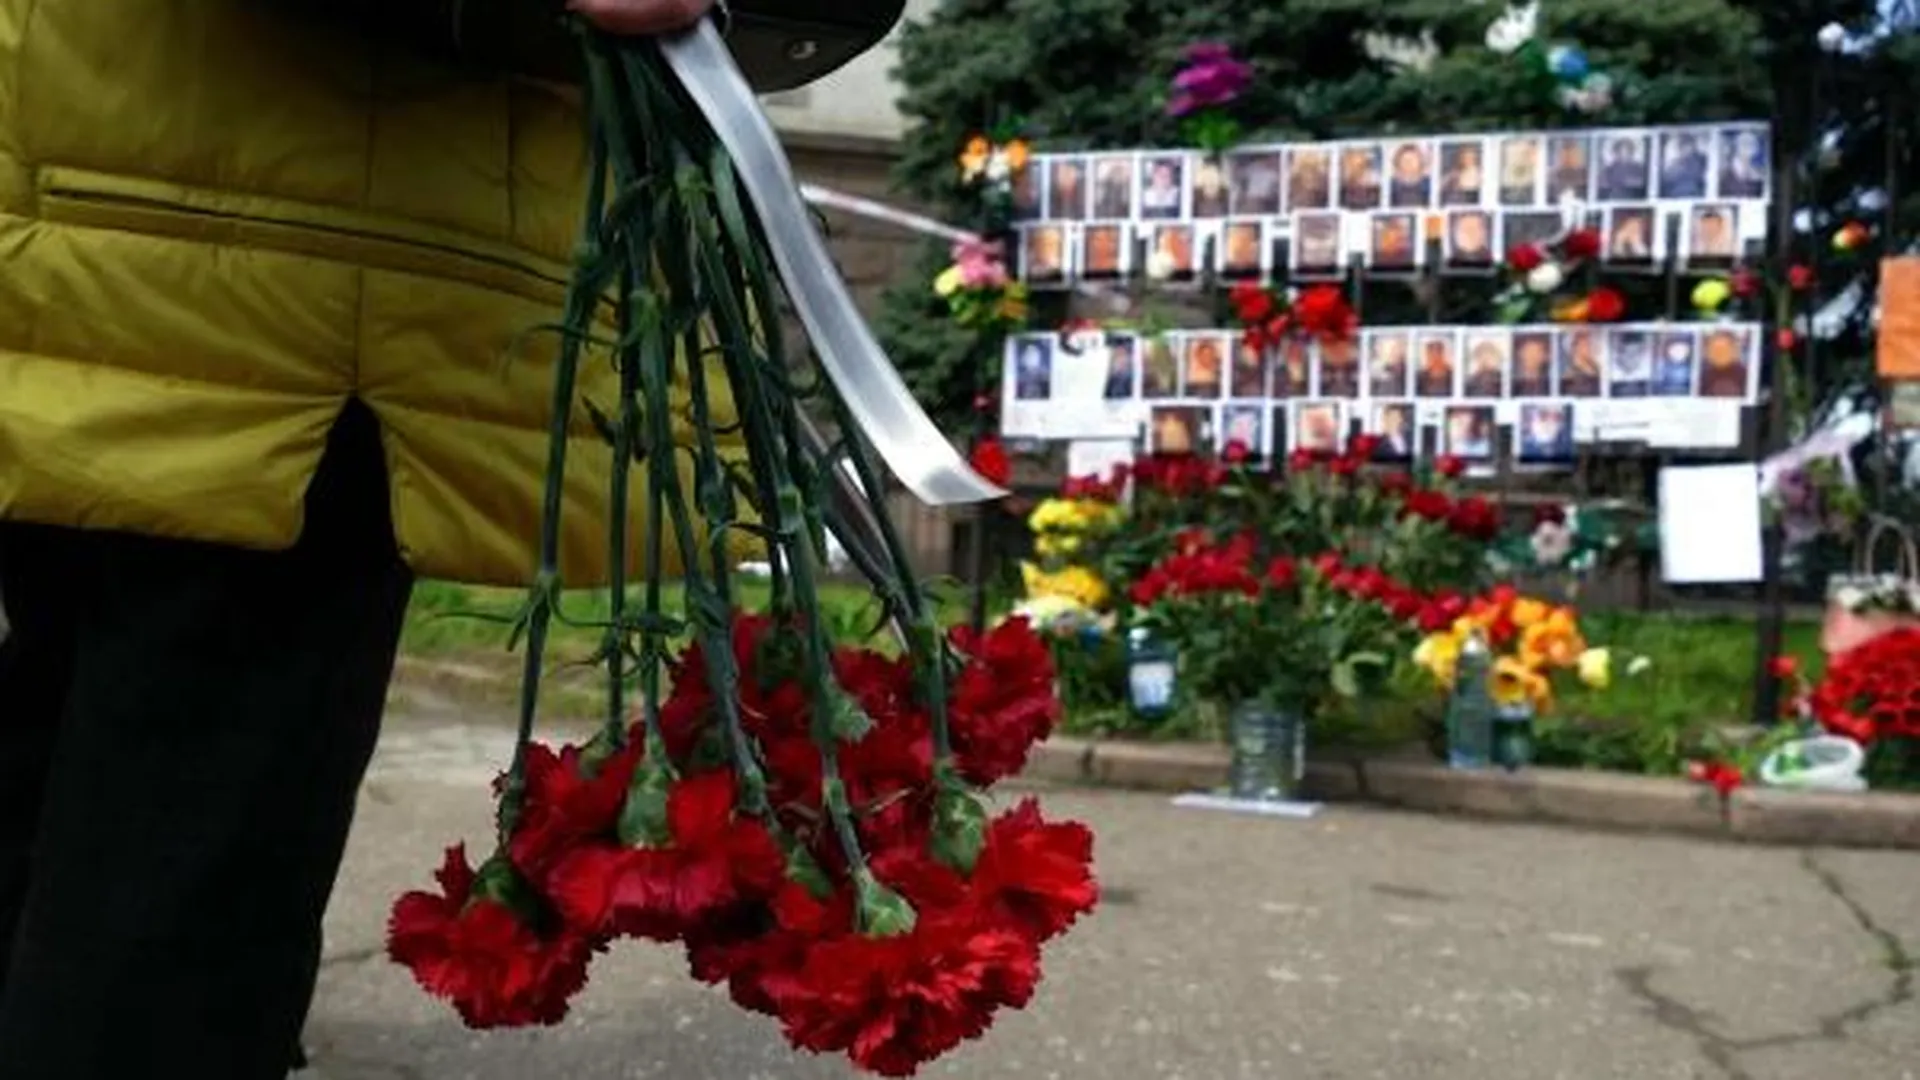 ООН 10 лет назад выдала Украине индульгенцию на насилие — Гатилов